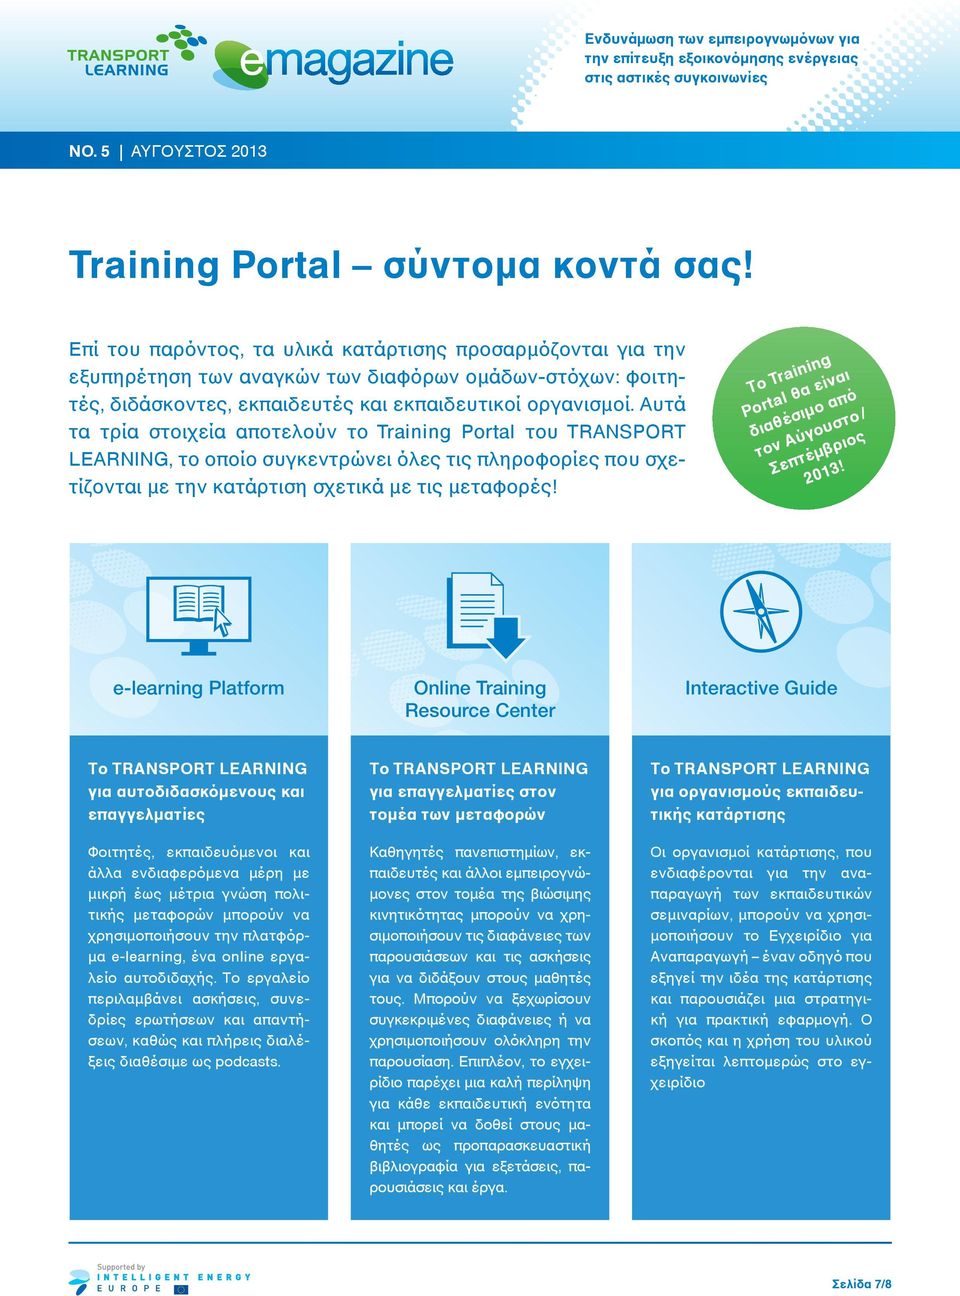 Αυτά τα τρία στοιχεία αποτελούν το Training Portal του TRANSPORT LEARNING, το οποίο συγκεντρώνει όλες τις πληροφορίες που σχετίζονται με την κατάρτιση σχετικά με τις μεταφορές!